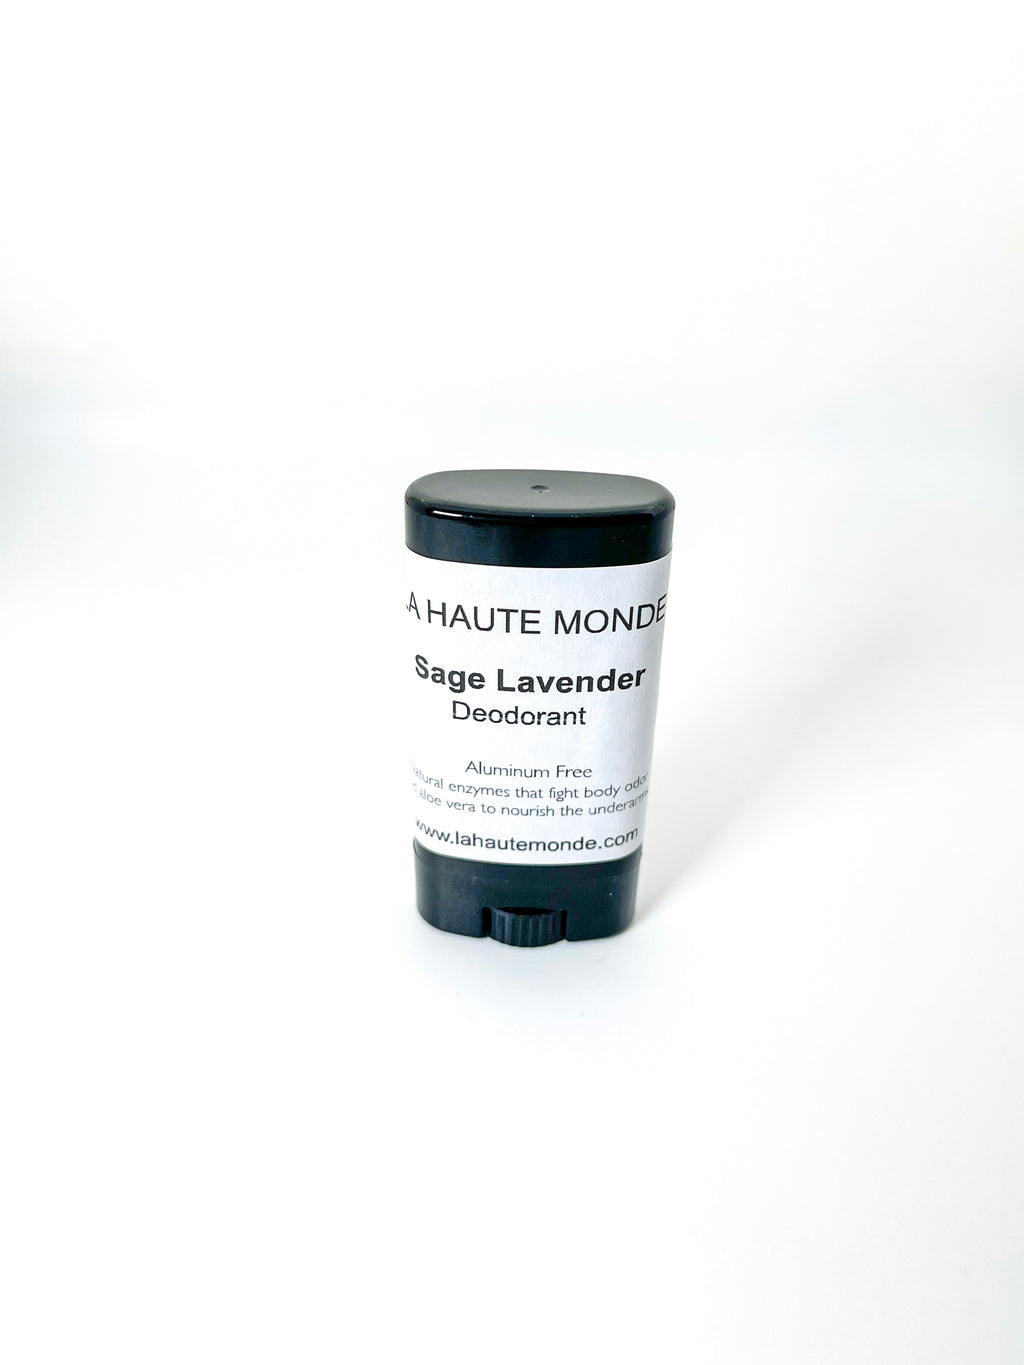 Sage Lavender Aluminum Free Deodorant